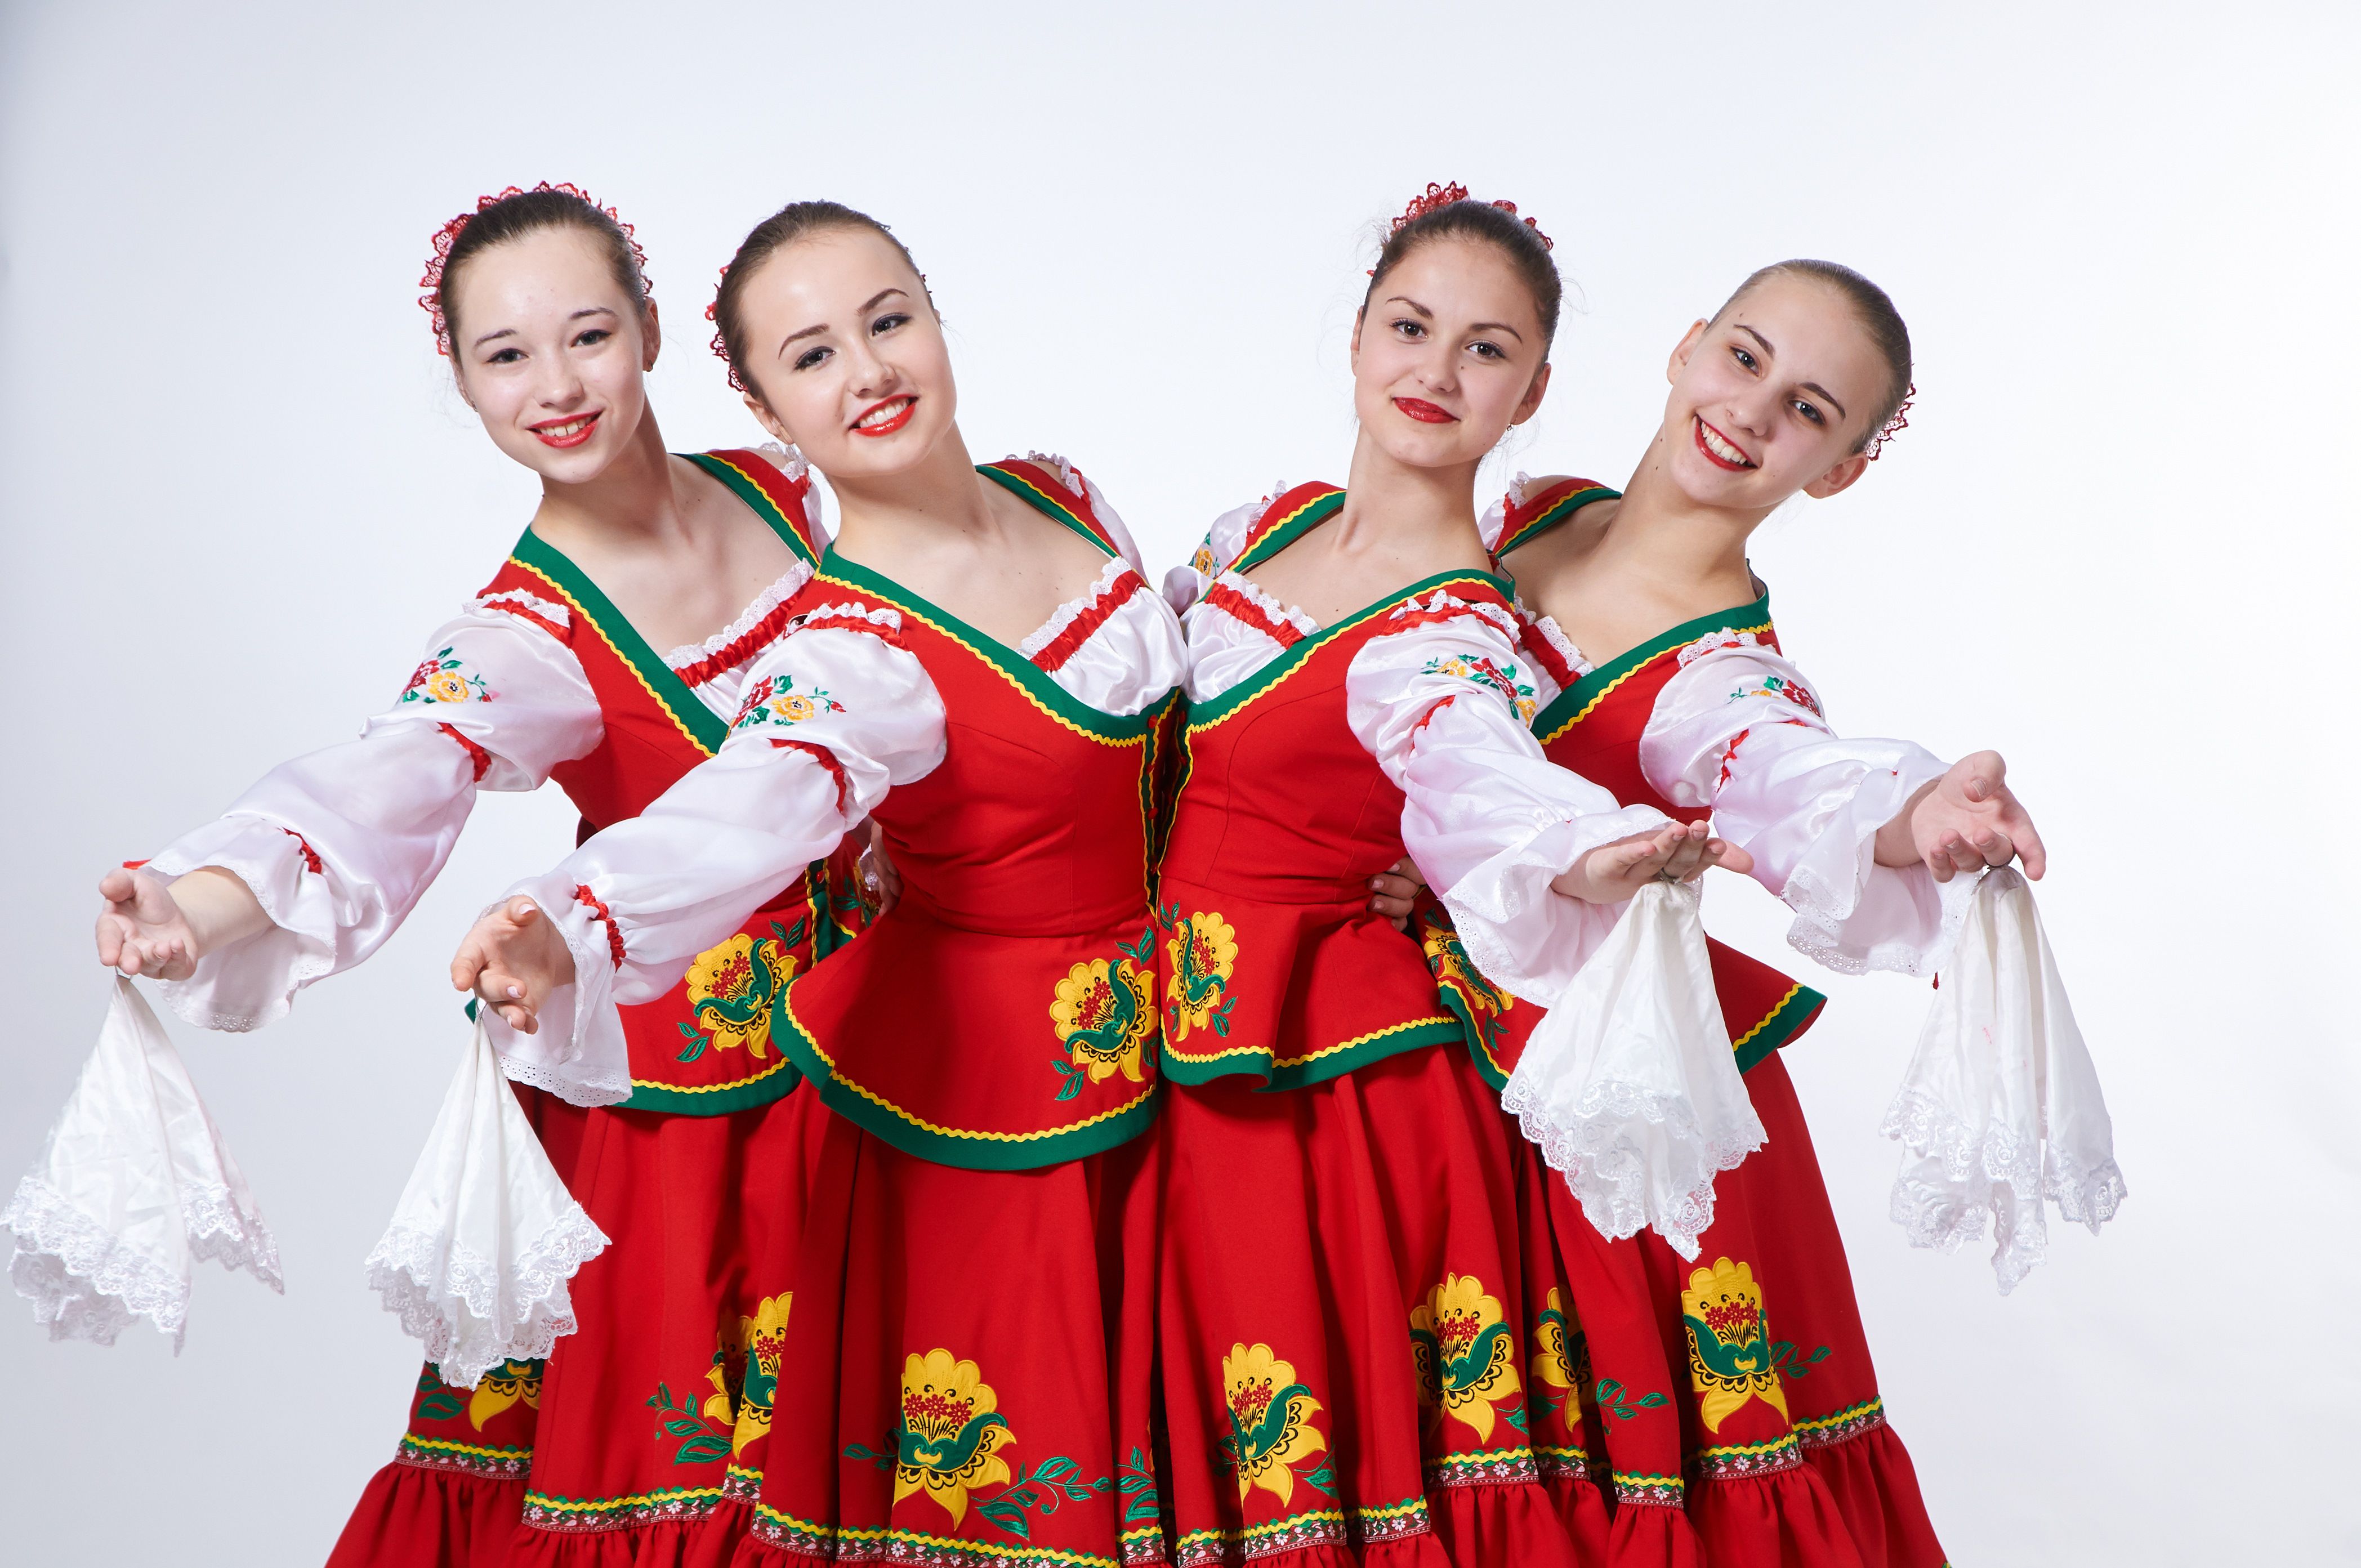 Русский народный танец девушки. Народные танцы. Народные танцы России. Русский танец. Национальные танцы России.